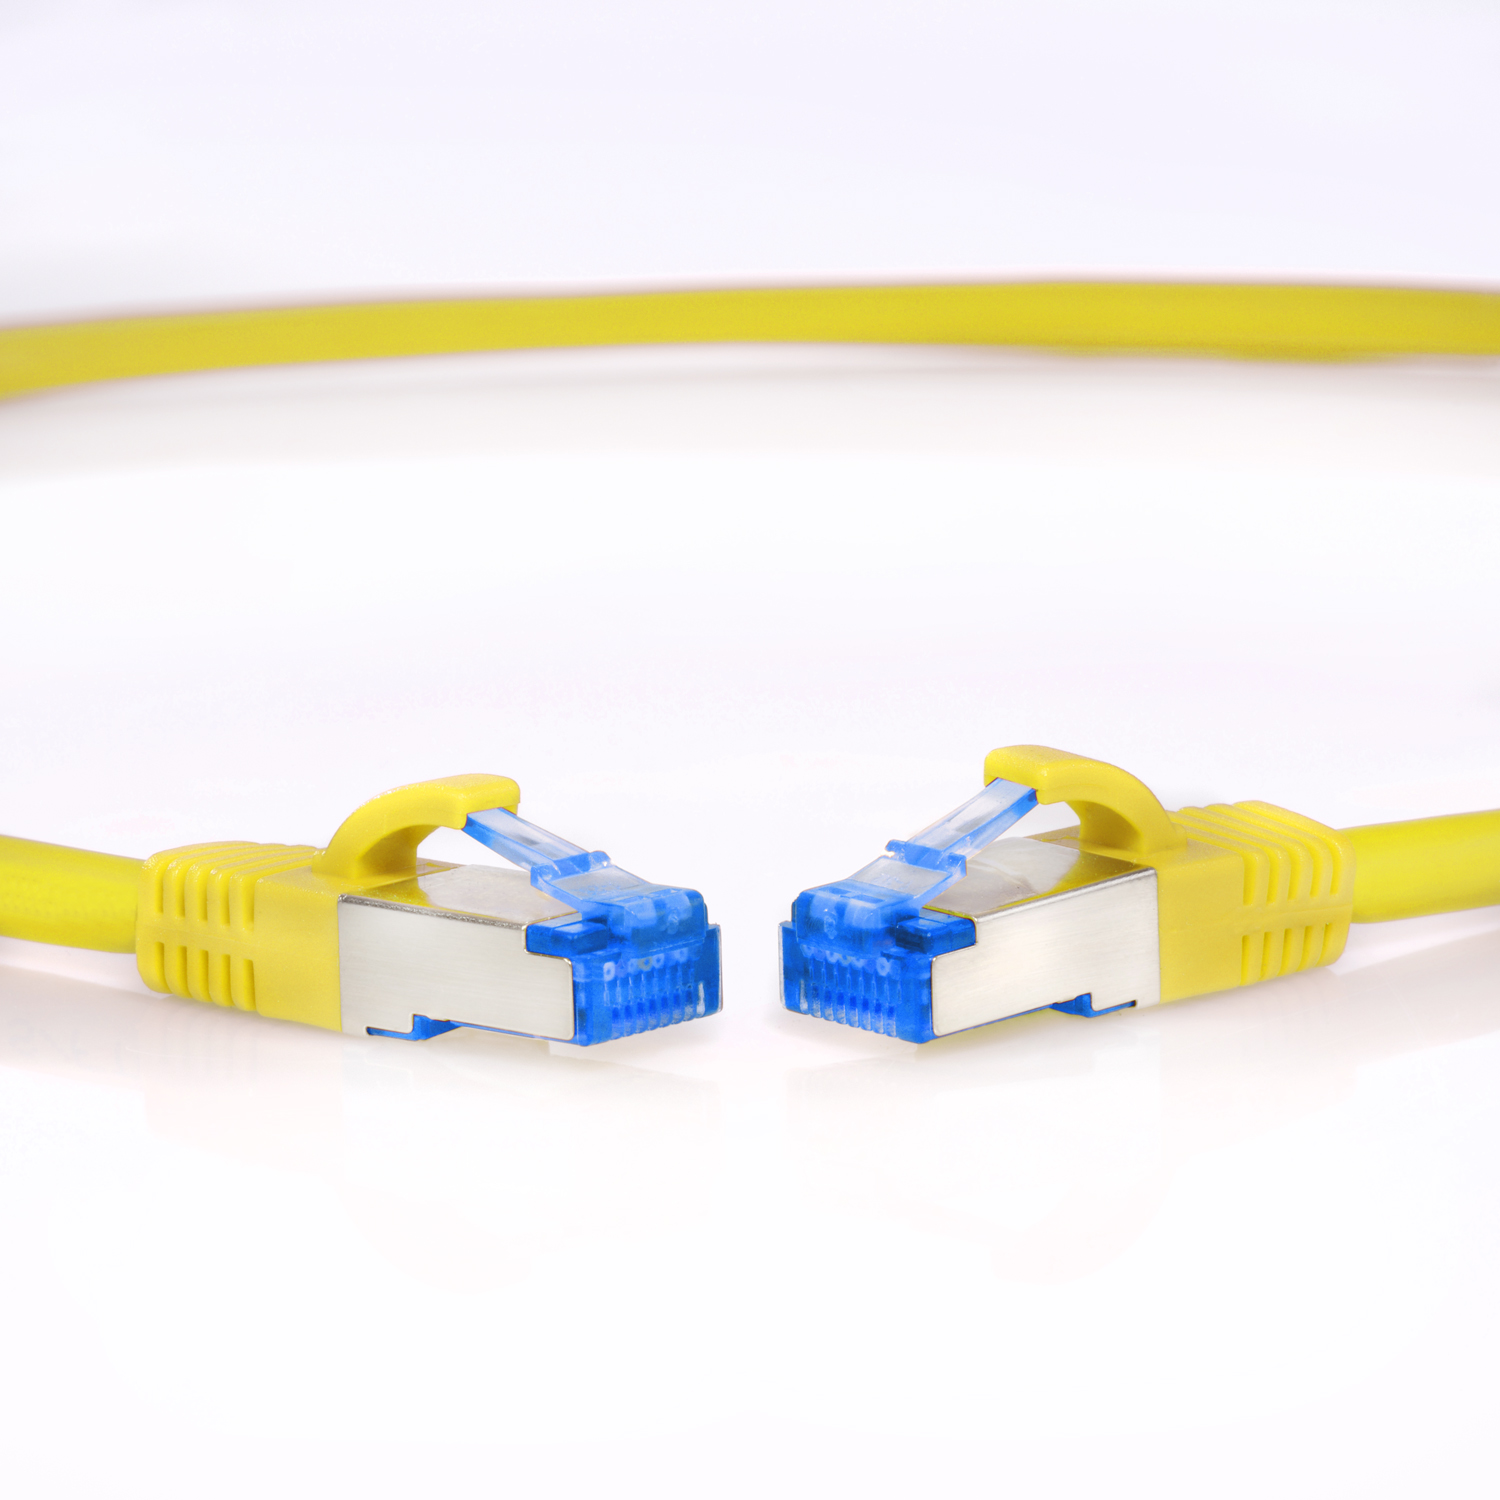 Netzwerkkabel 10GBit, gelb, m Netzwerkkabel, Patchkabel / 10 10m S/FTP TPFNET